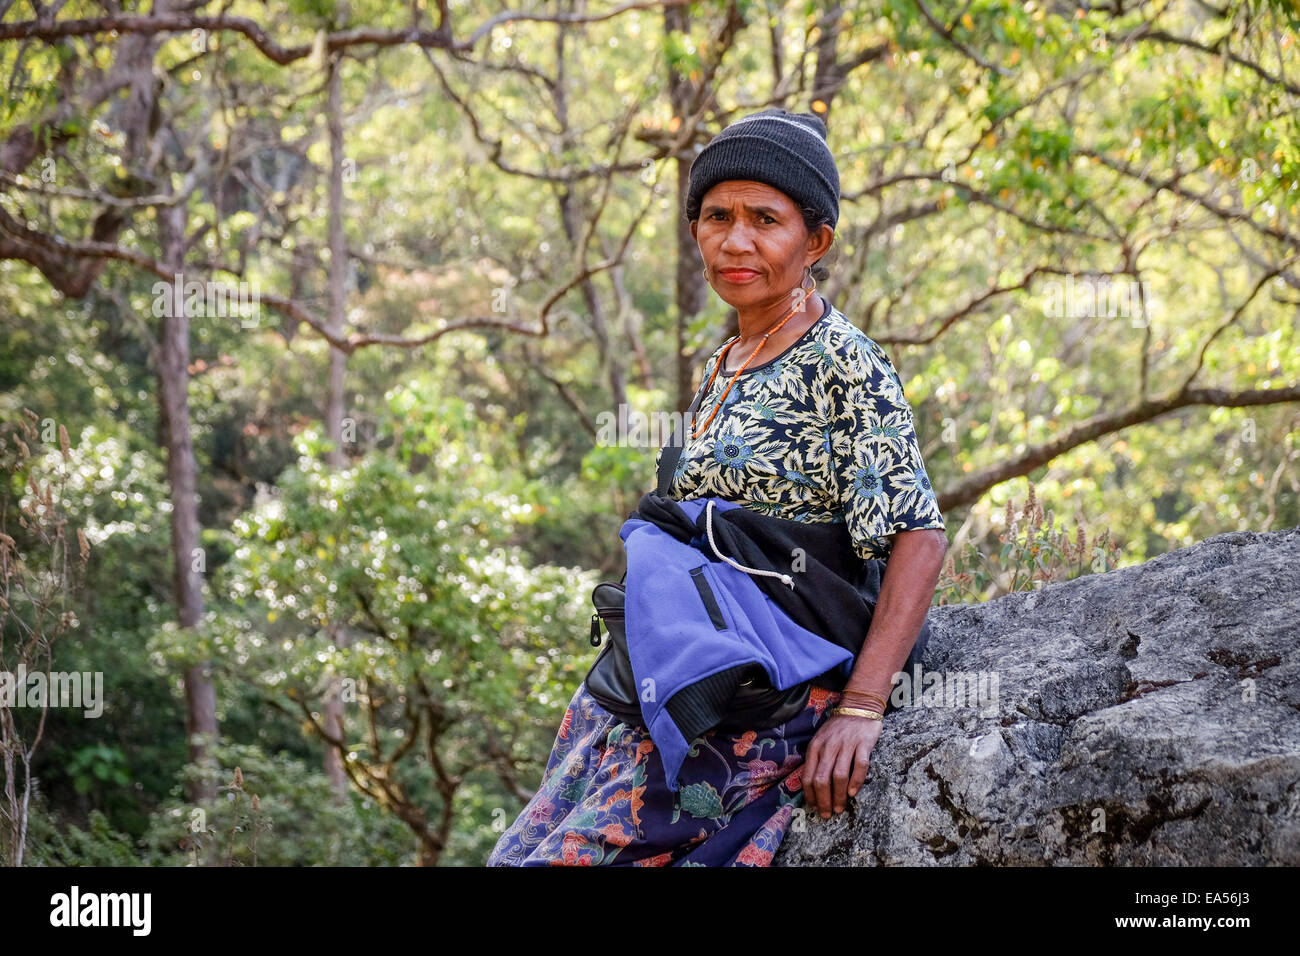 Yuliana Fuka, un abitante di Fatumnasi, in posa per una foto durante un viaggio al Monte Mutis. Fatumnasi, Timor centro-meridionale, Nusa Tenggara orientale, Indonesia. Foto Stock